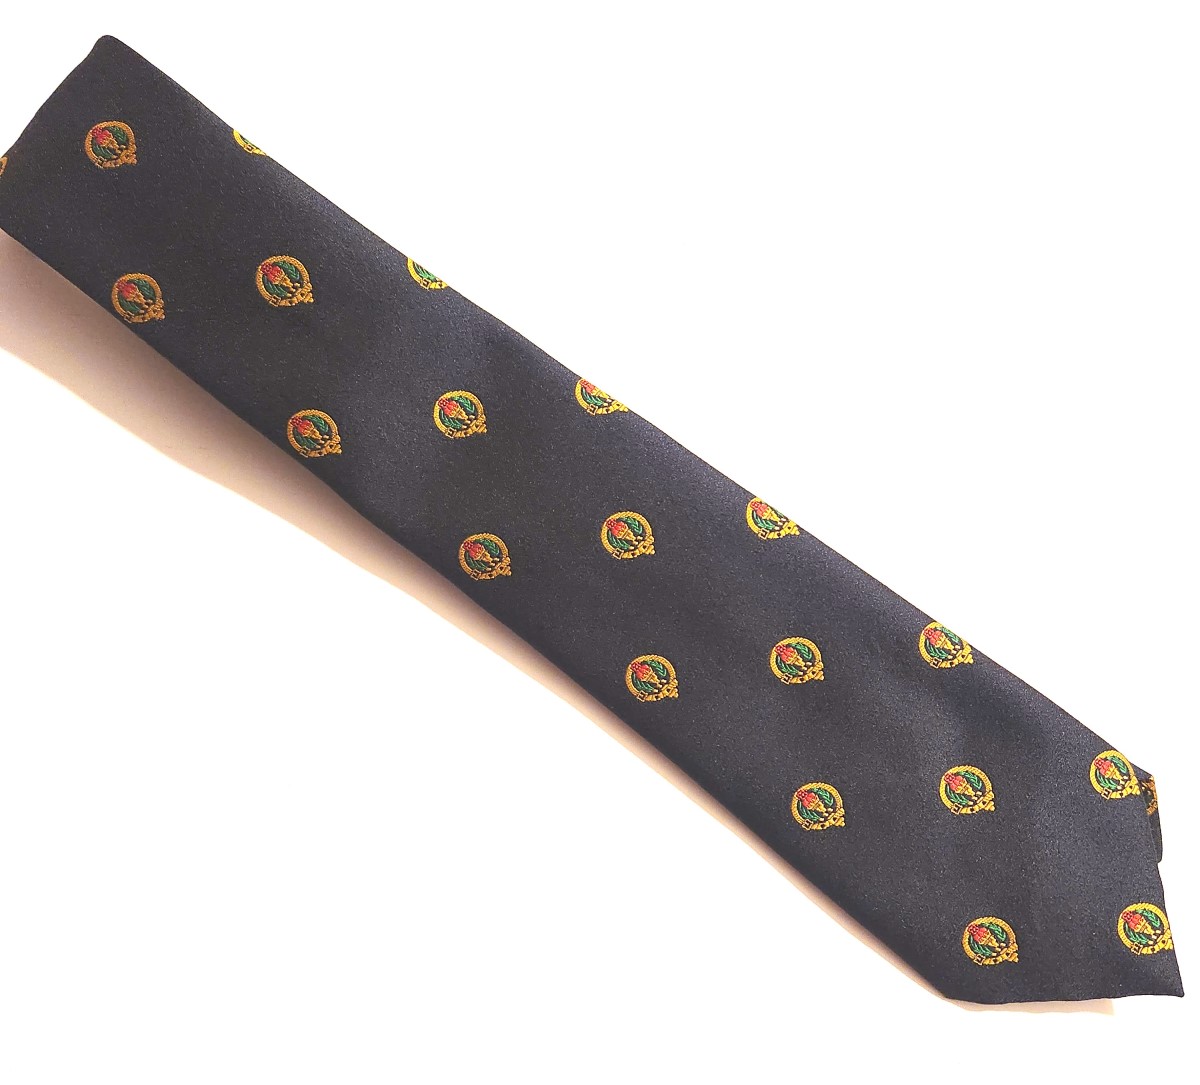 Buchanan Clan Badge Tie